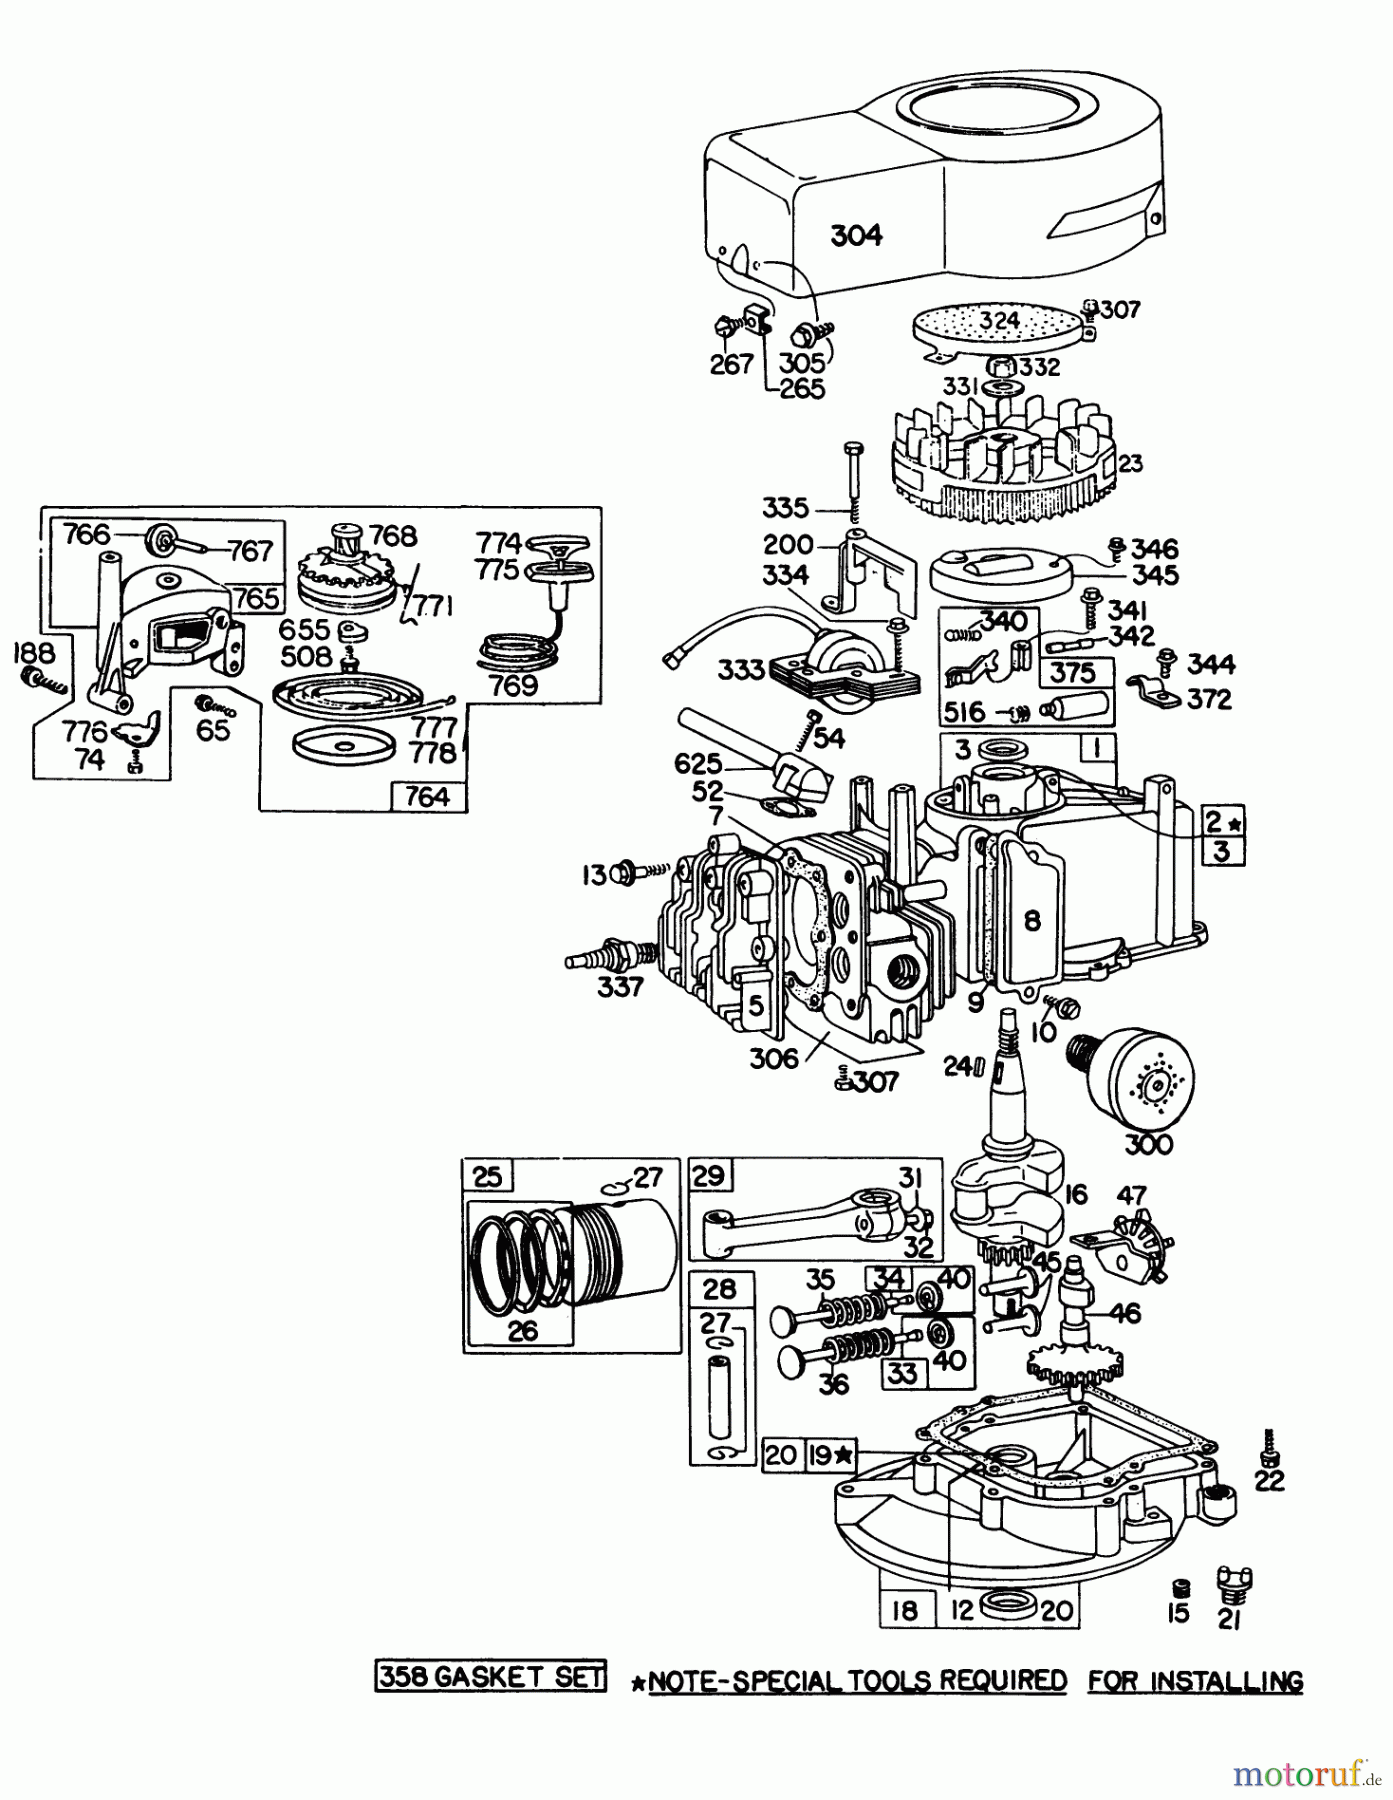  Toro Neu Mowers, Walk-Behind Seite 1 16277 - Toro Whirlwind Lawnmower, 1978 (8000001-8999999) ENGINE BRIGGS & STRATTON MODEL 92908-1743-01 FOR 21